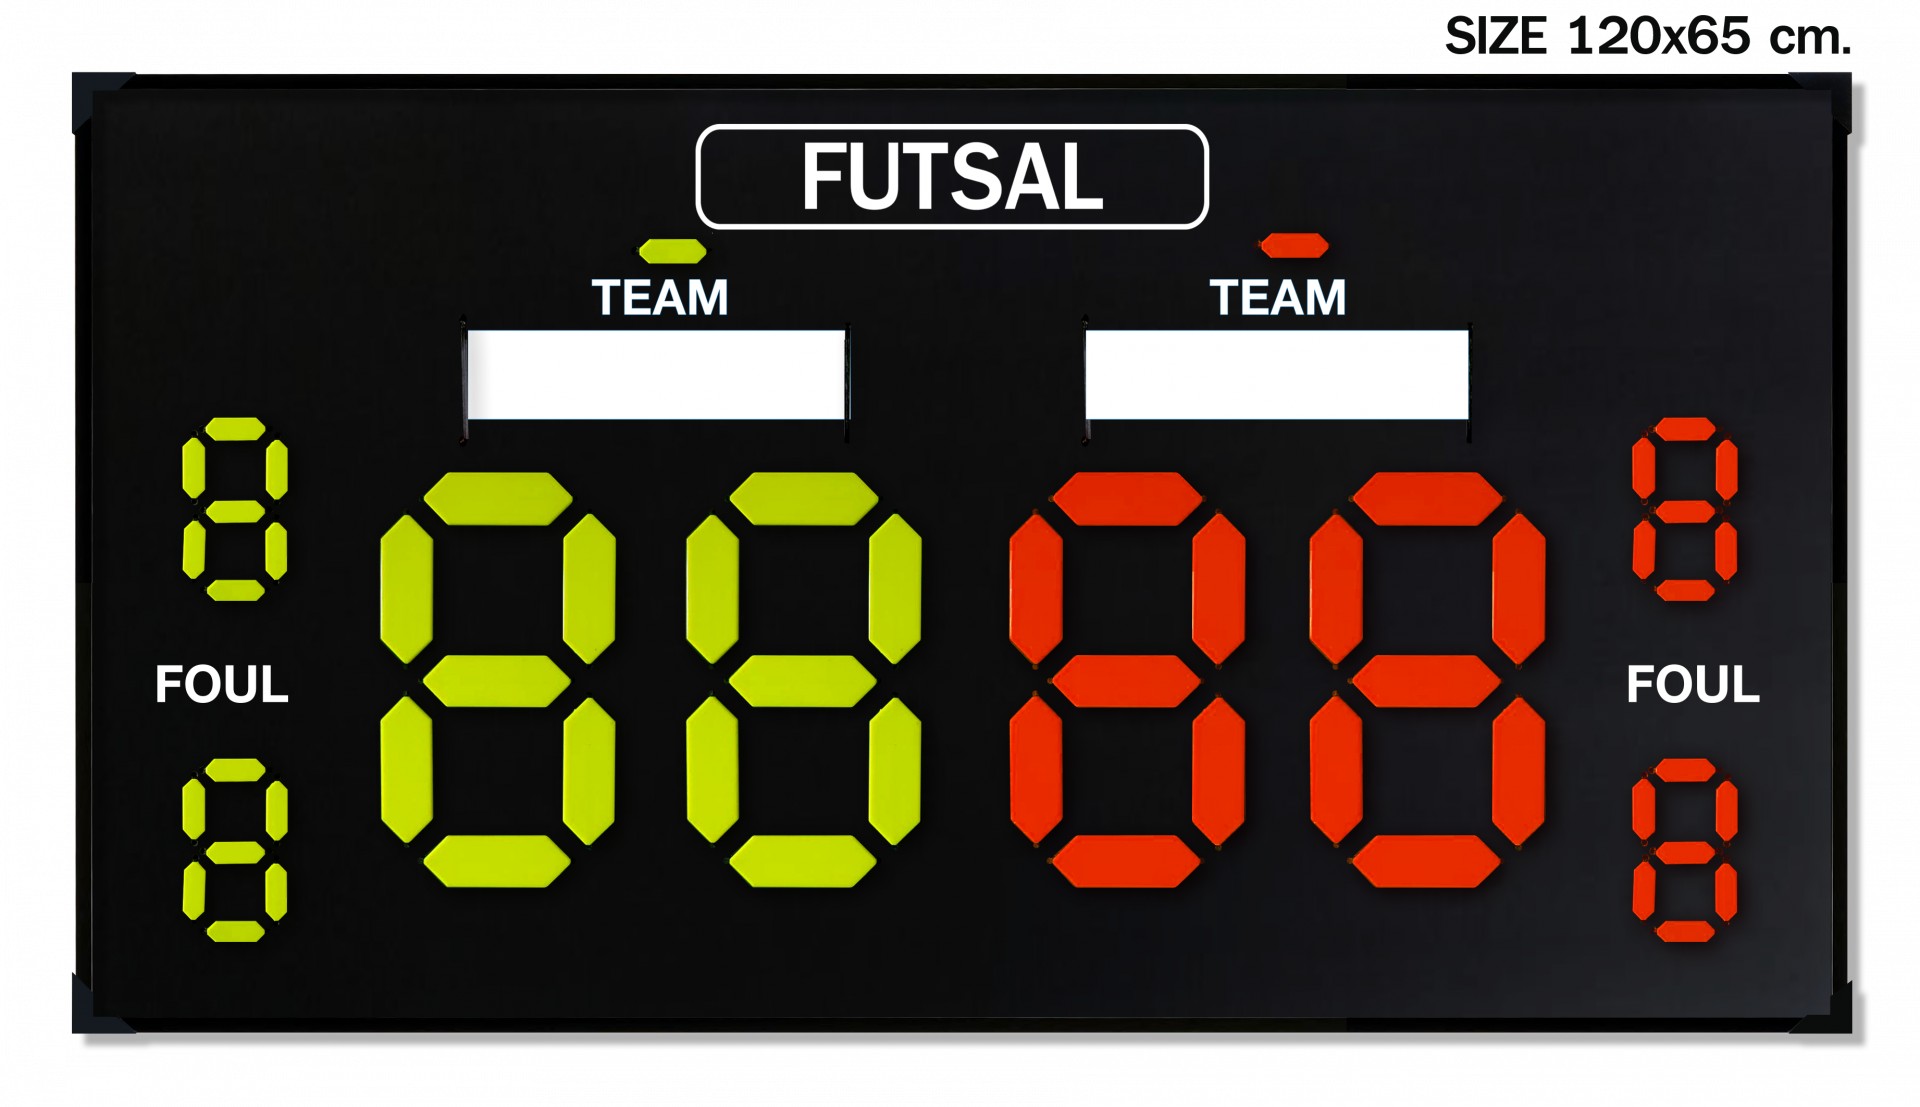 ป้ายคะแนน Scoreboard FUTSAL